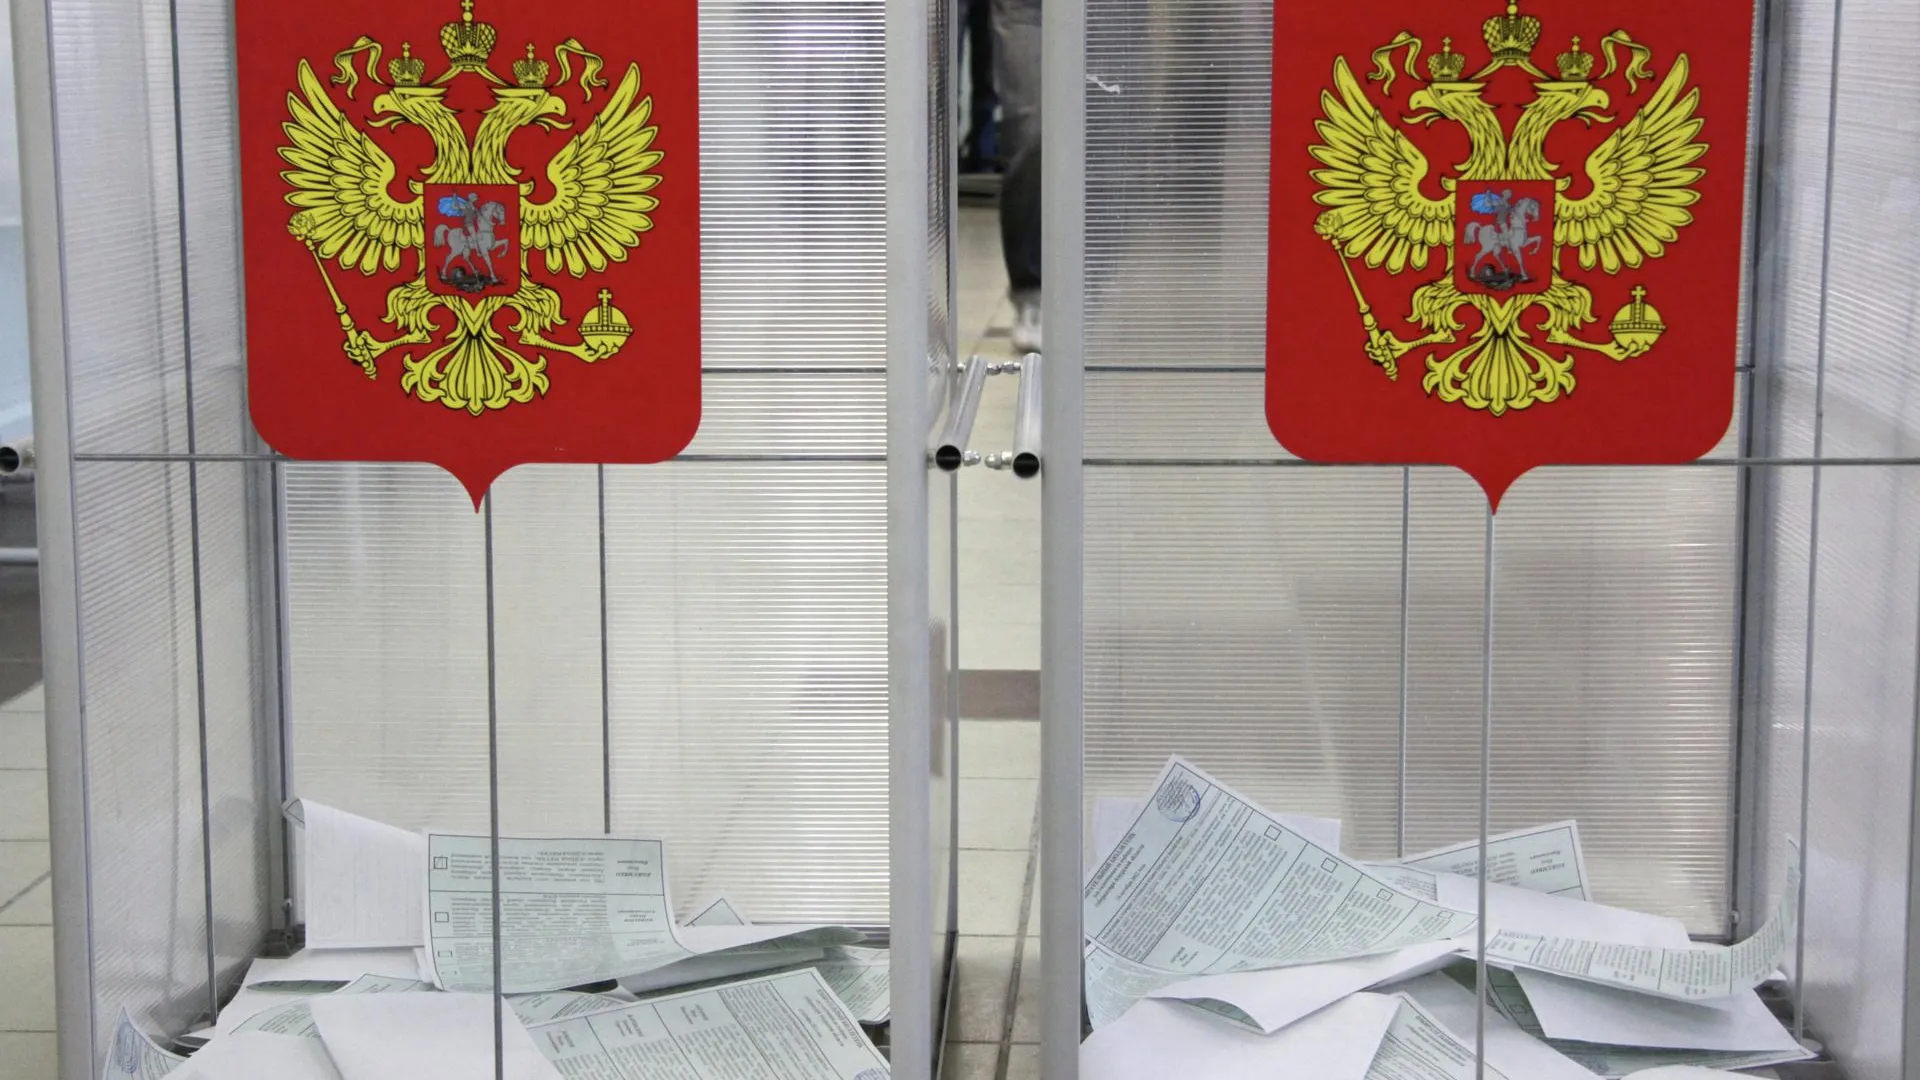 Выборы в РФ: низкая явка, высокие результаты ЕР, сокращение нарушений